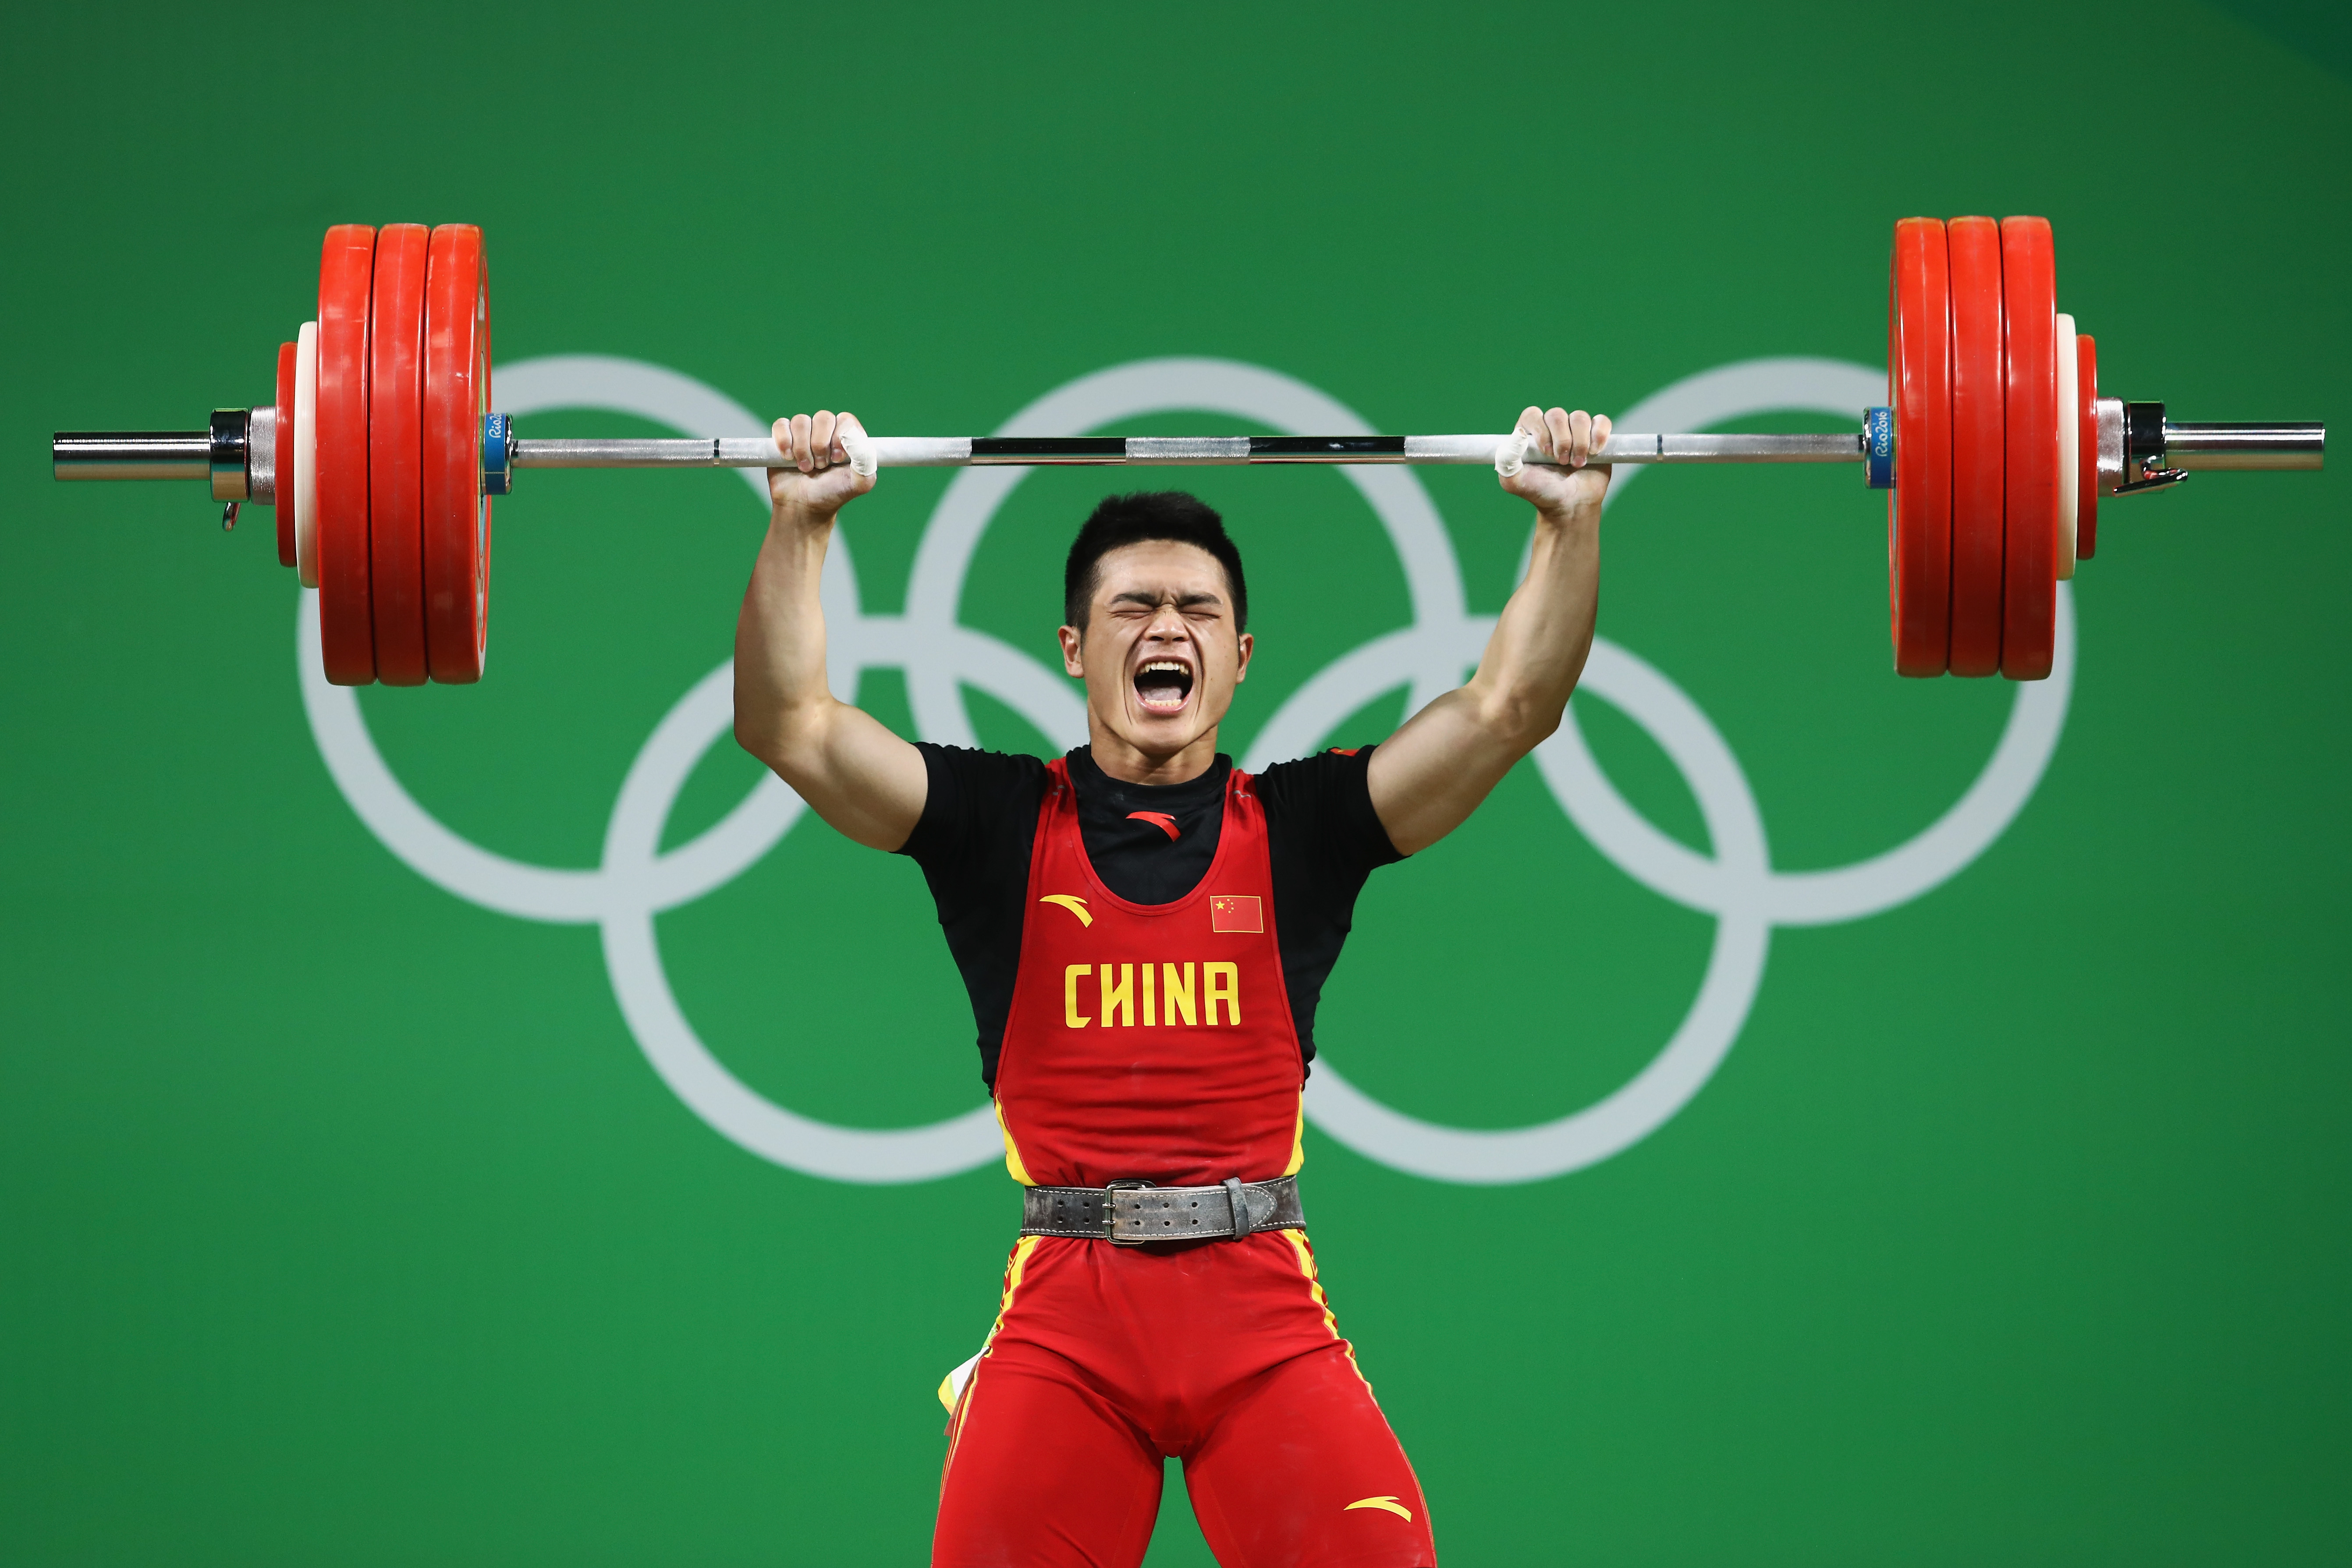 石智勇 举重 2019年世界举重锦标赛男子73公斤级冠军